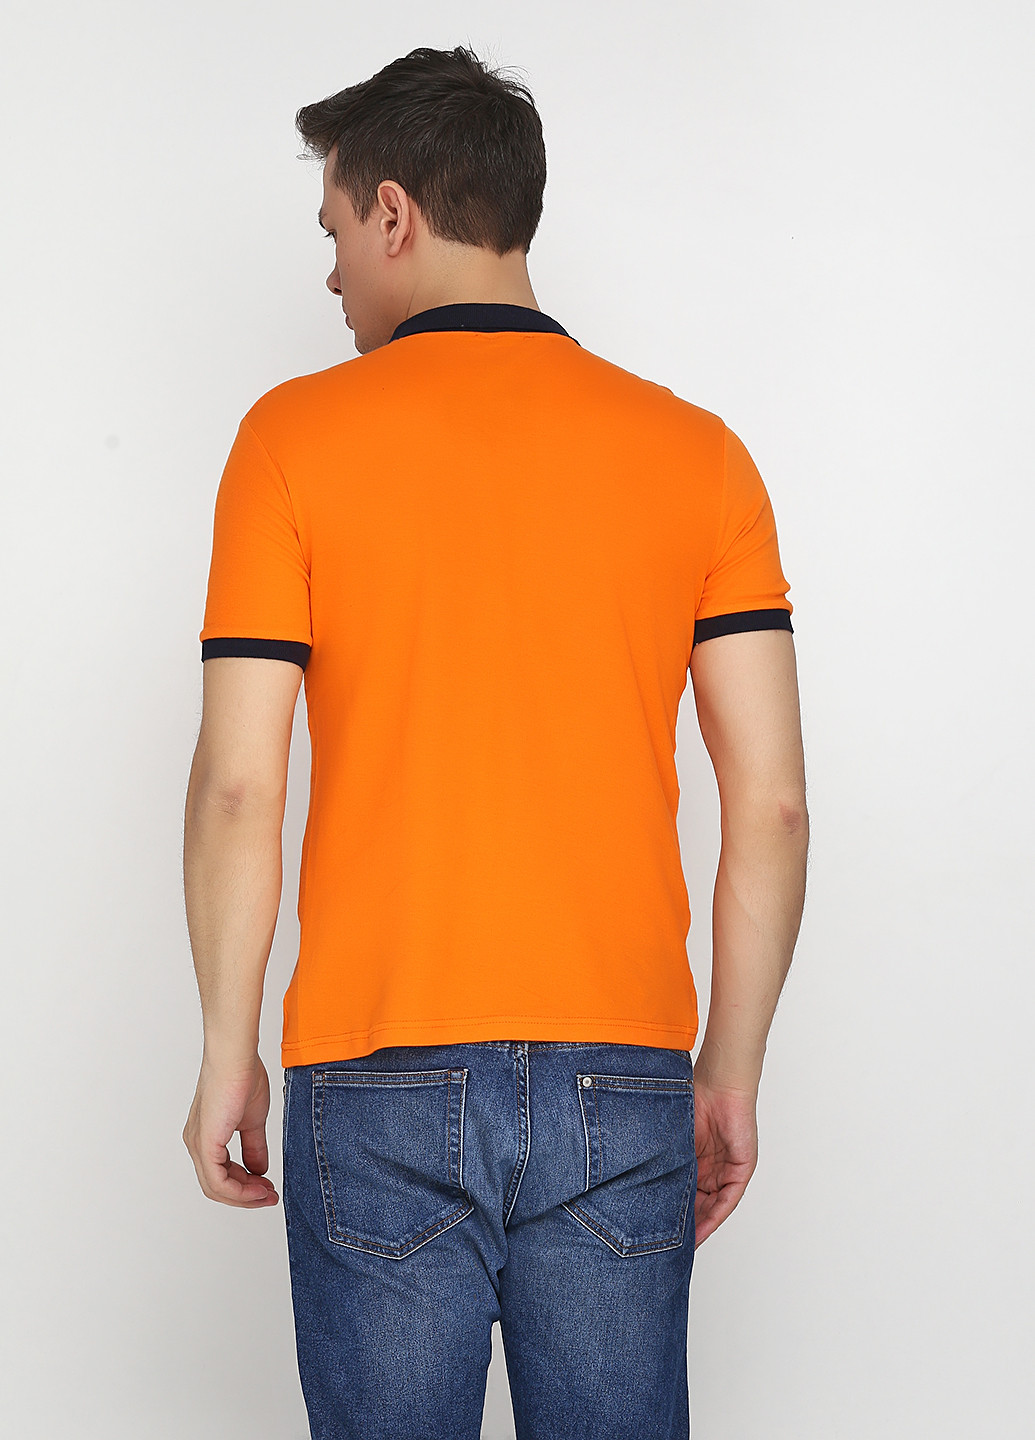 Оранжевая футболка-поло для мужчин Chiarotex с рисунком